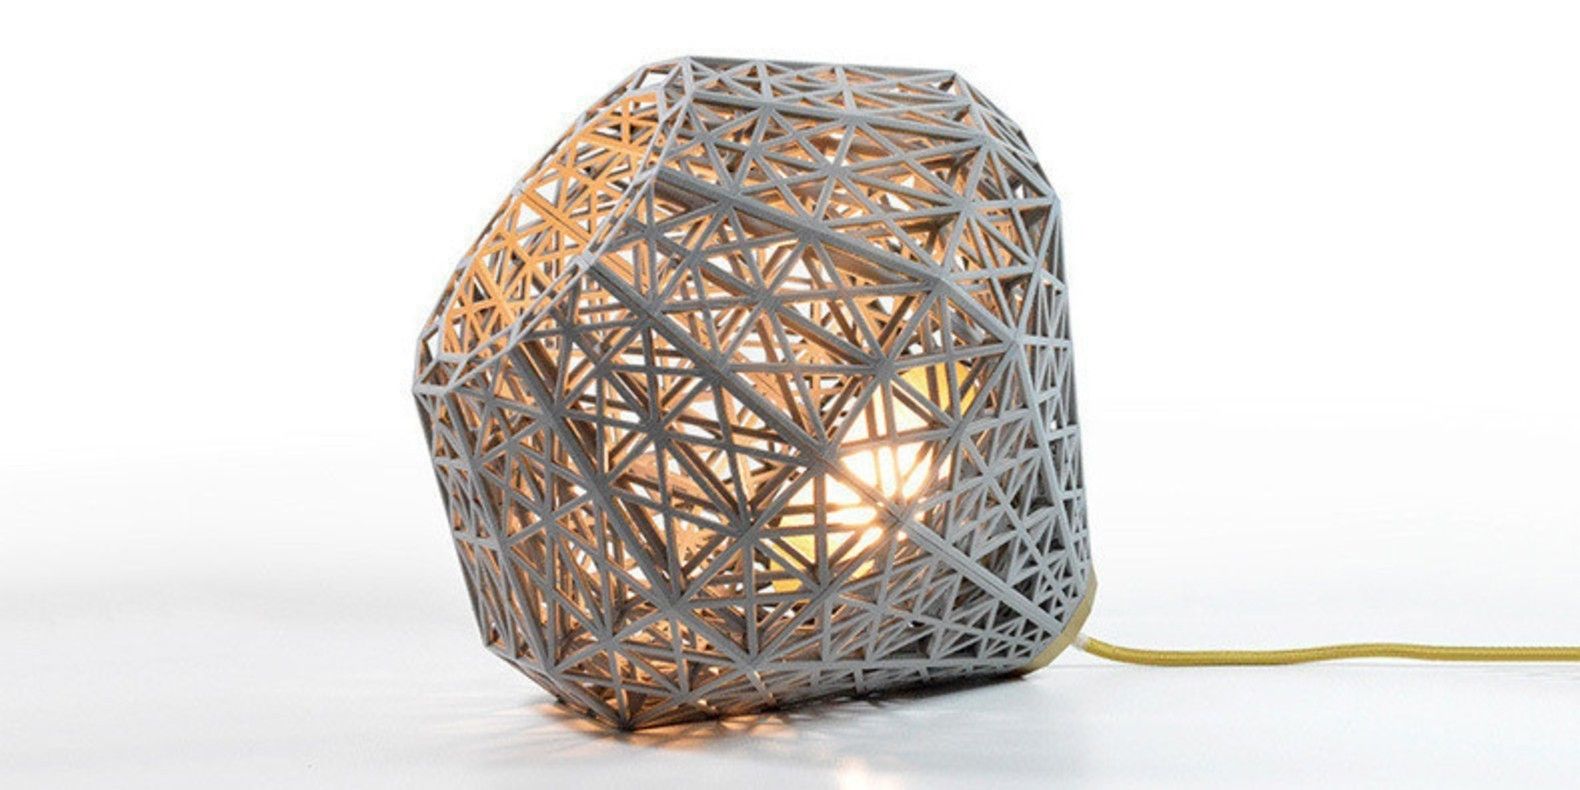 Voici une sélection des meilleurs fichiers 3D pour imprimer en 3D ses lampes design